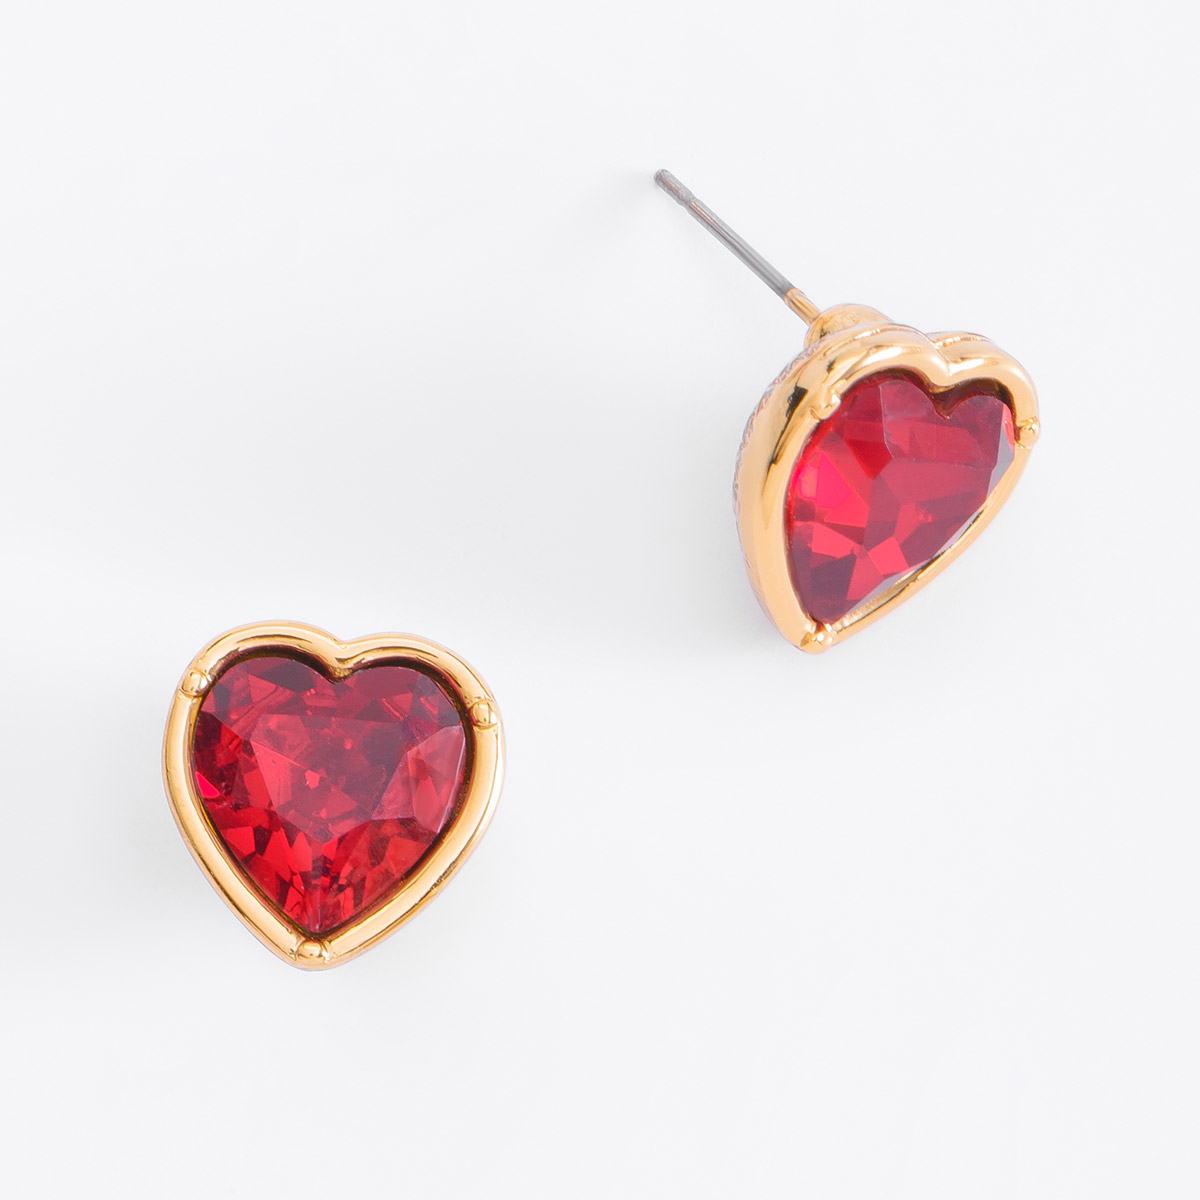 Bonitos aretes en forma de corazón con piedra en tono cereza, ideal para combinar con tu collar.
-Aretes con poste
-Piedra en tono rojo cereza